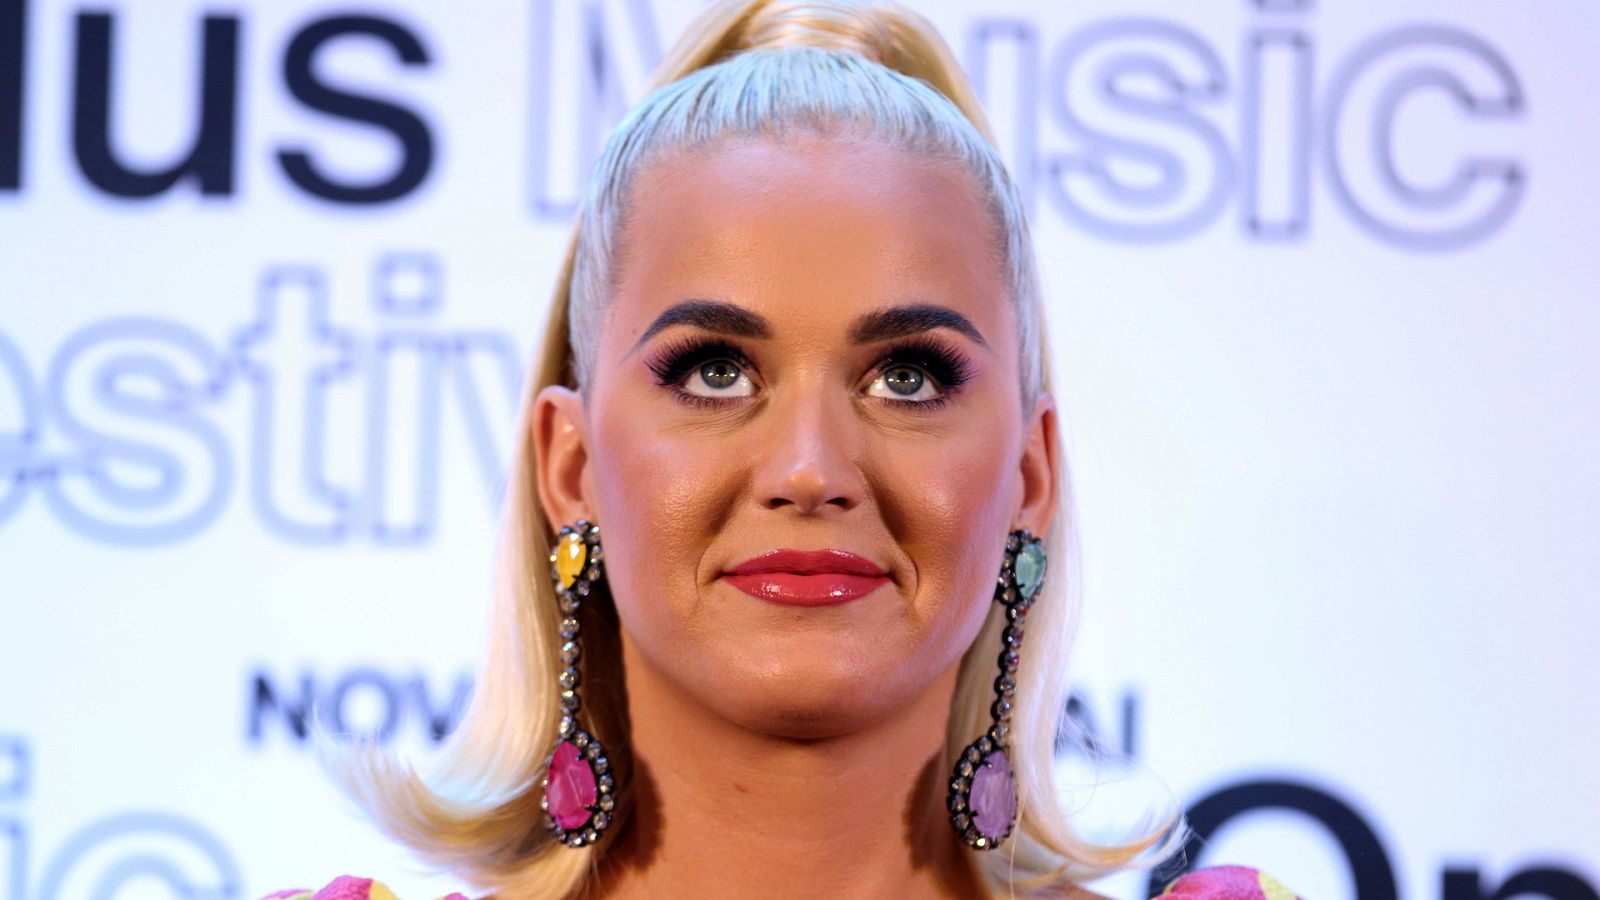 Katy Perry, en una imagen tomada en un evento en India el pasado mes de diciembre